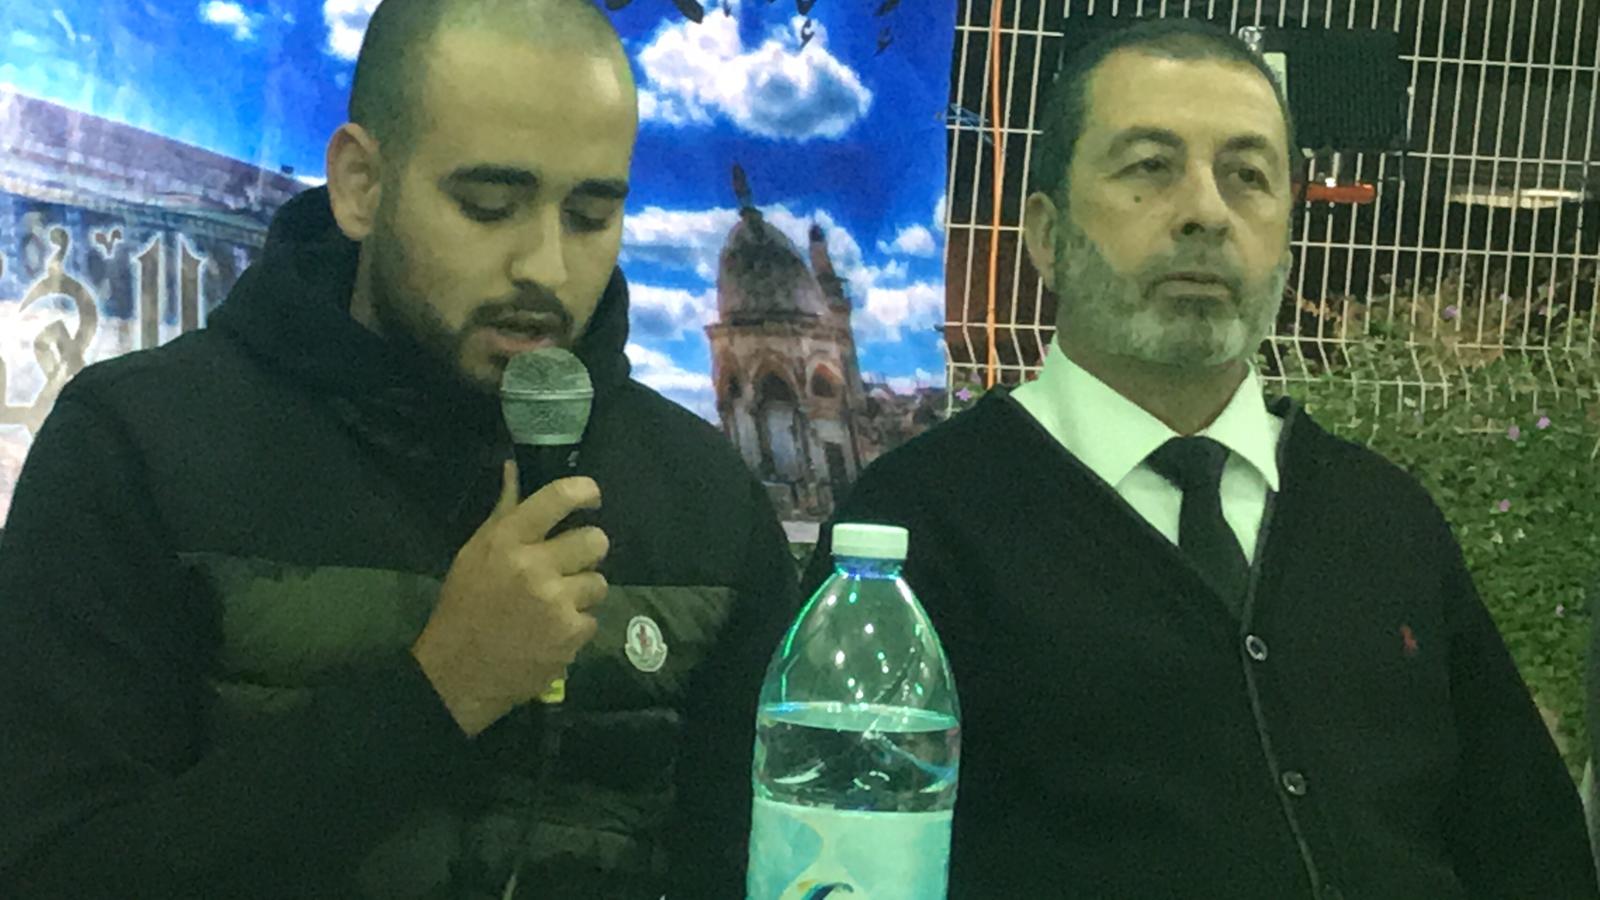 بالفيديو: خيمة الهدى الدعوية بيافا تستضيف القاضي محمد رشيد زبدة